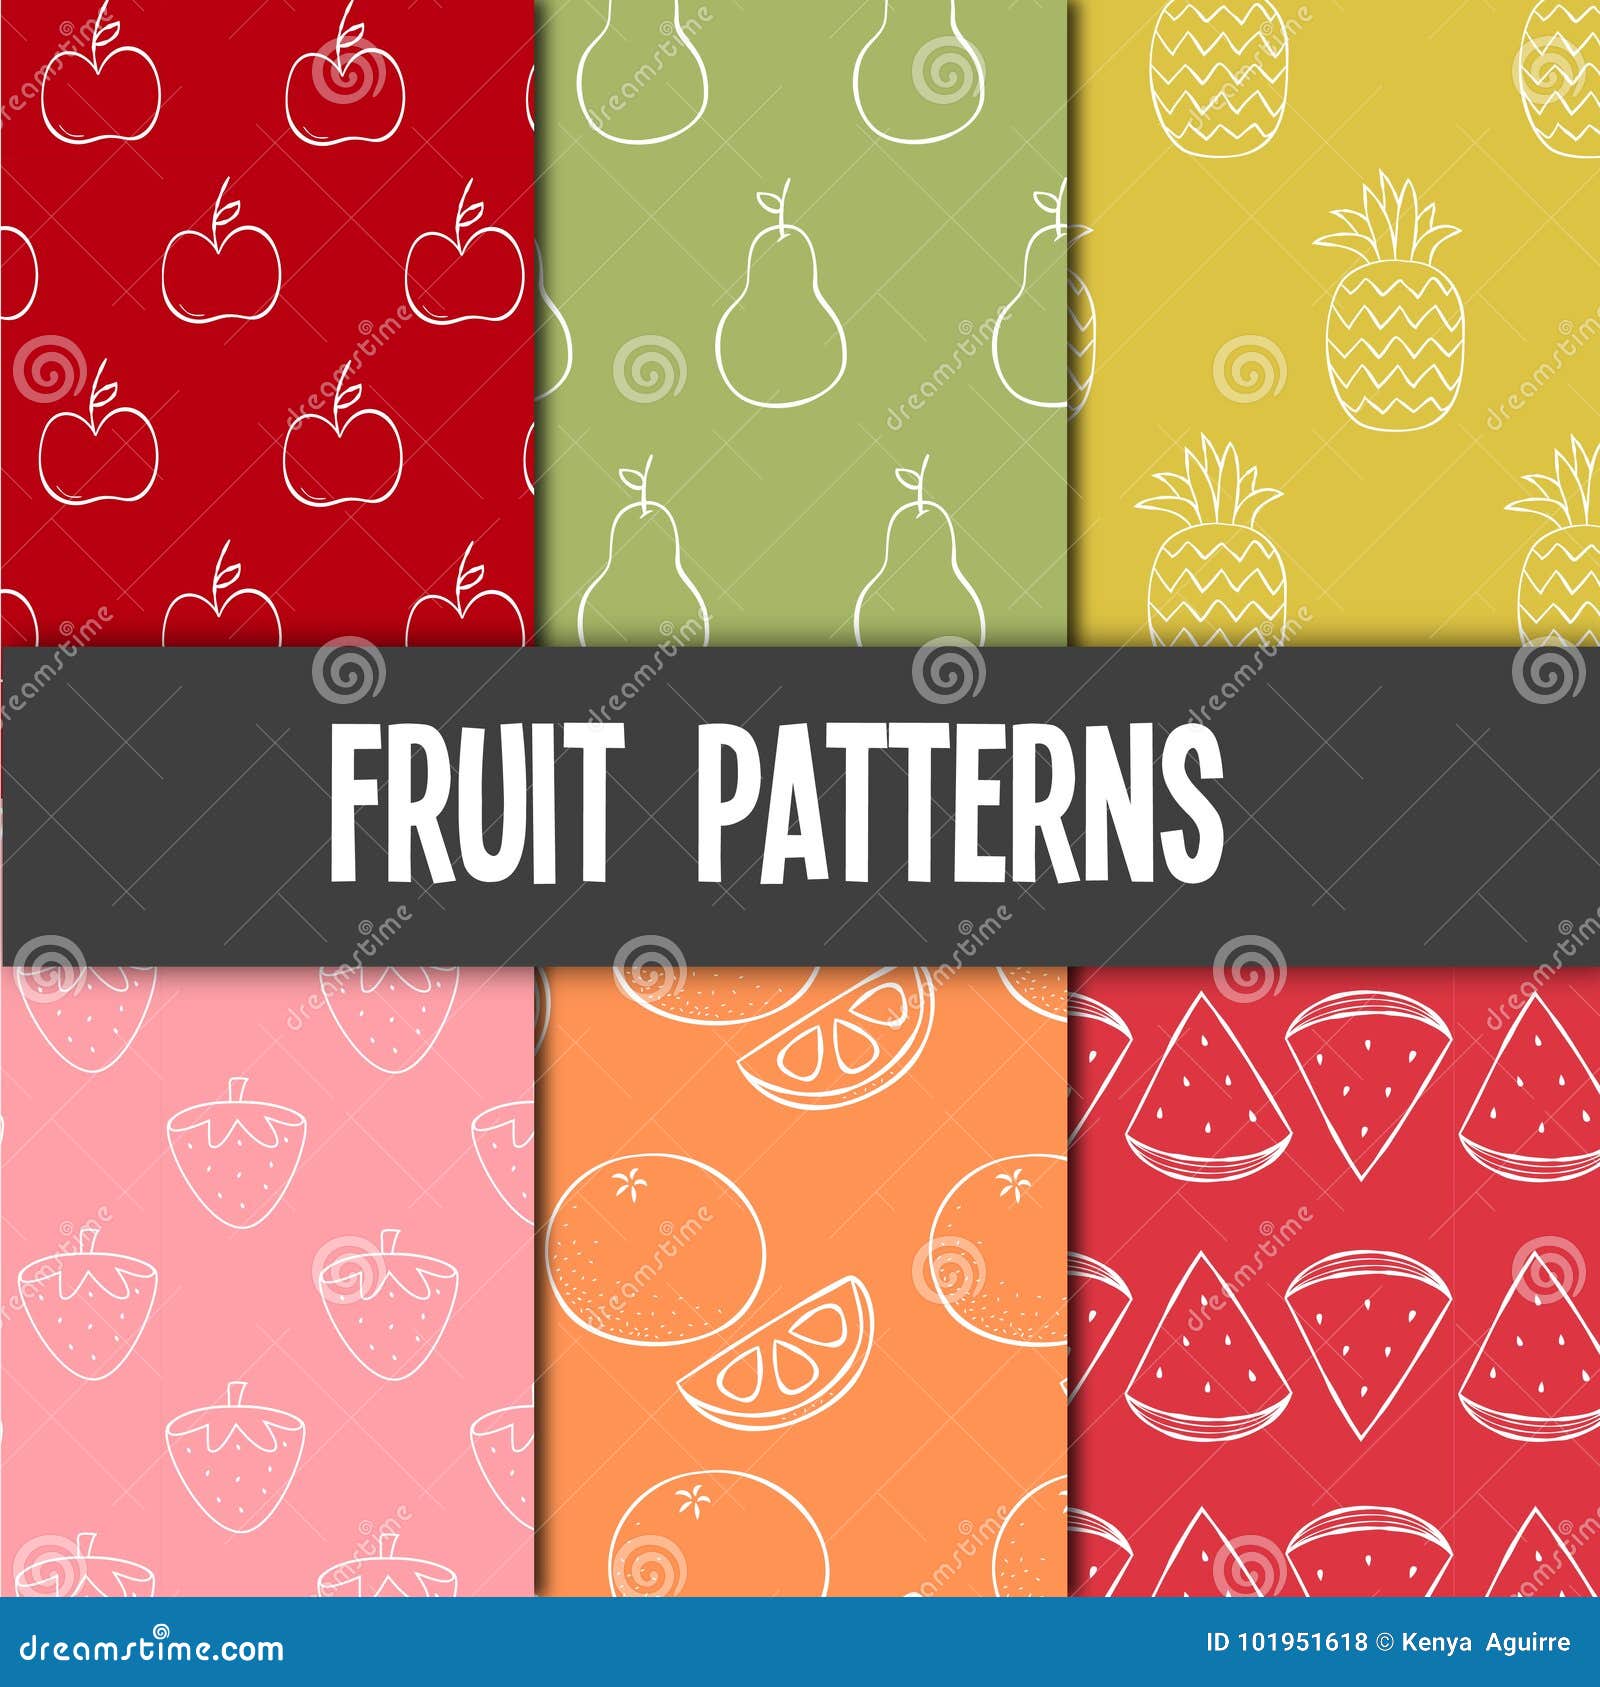 fruit patterns